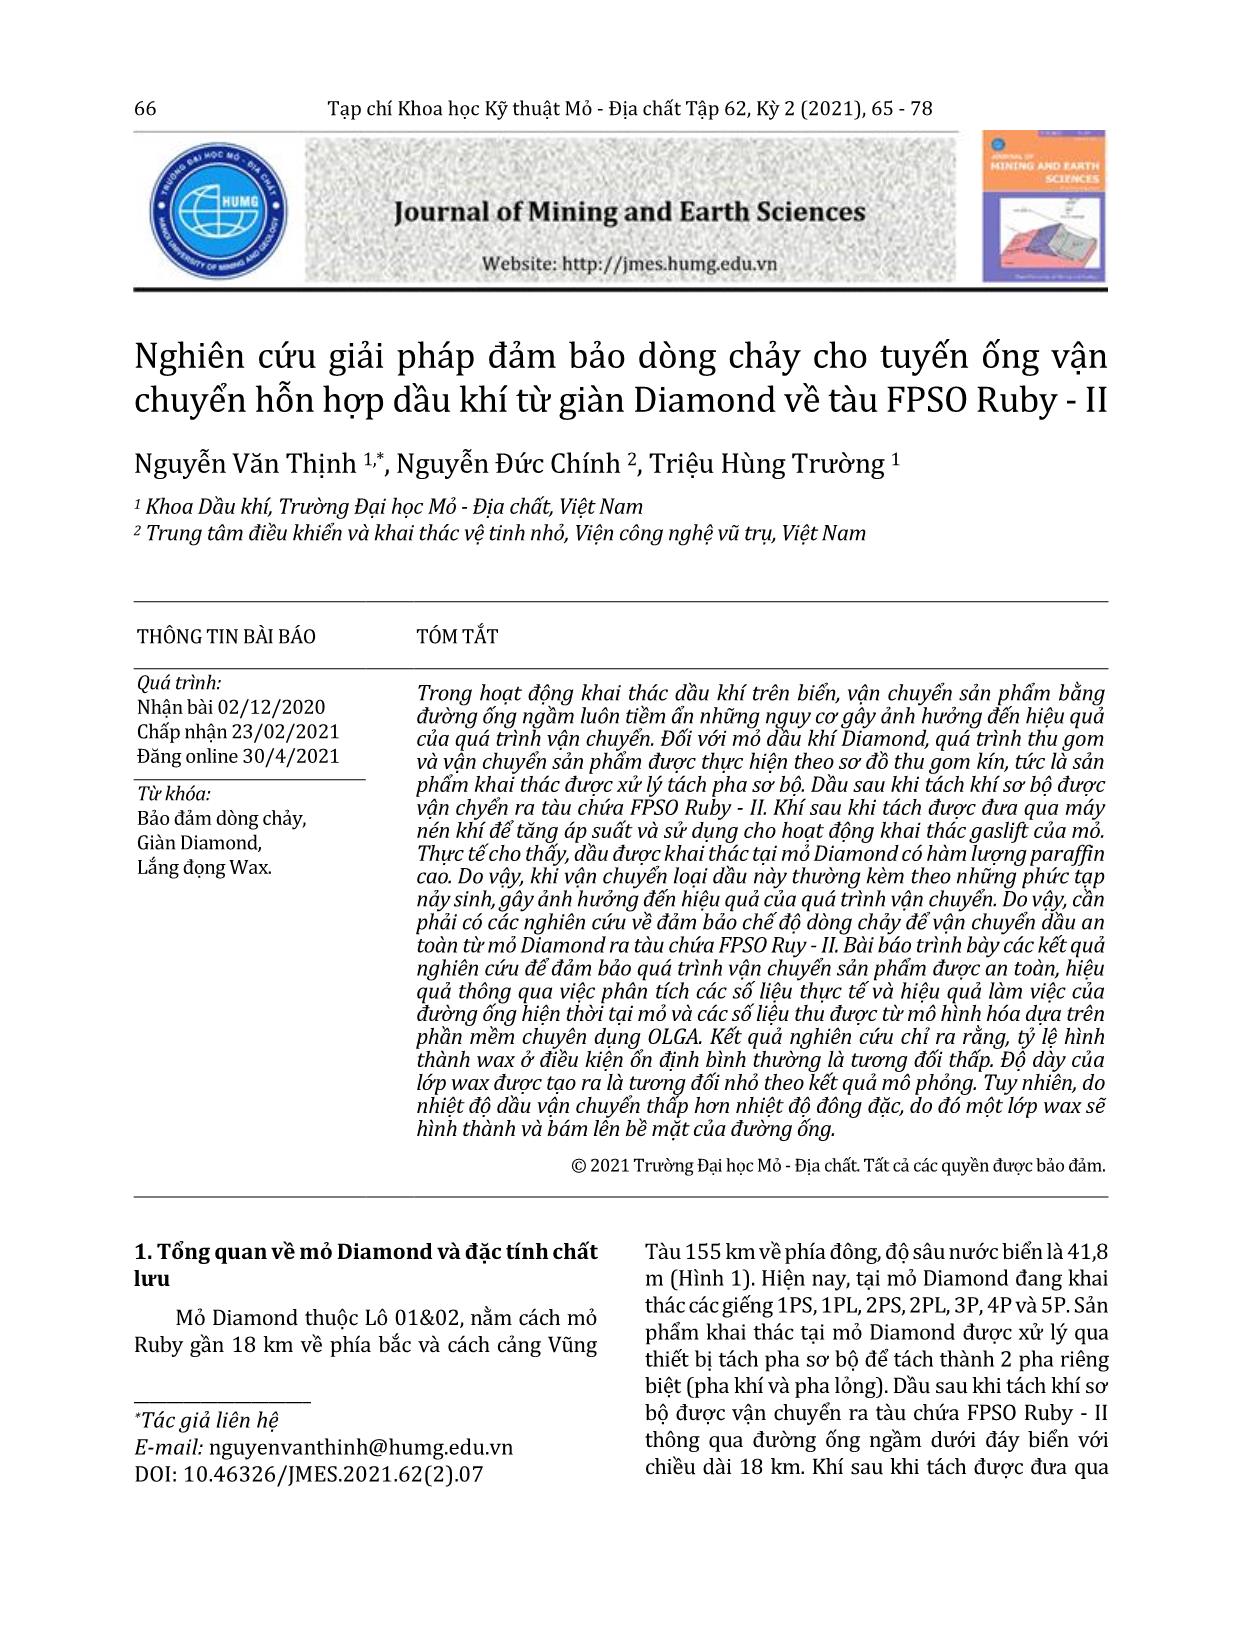 Nghiên cứu giải pháp đảm bảo dòng chảy cho tuyến ống vận chuyển hỗn hợp dầu khí từ giàn Diamond về tàu FPSO Ruby - II trang 2